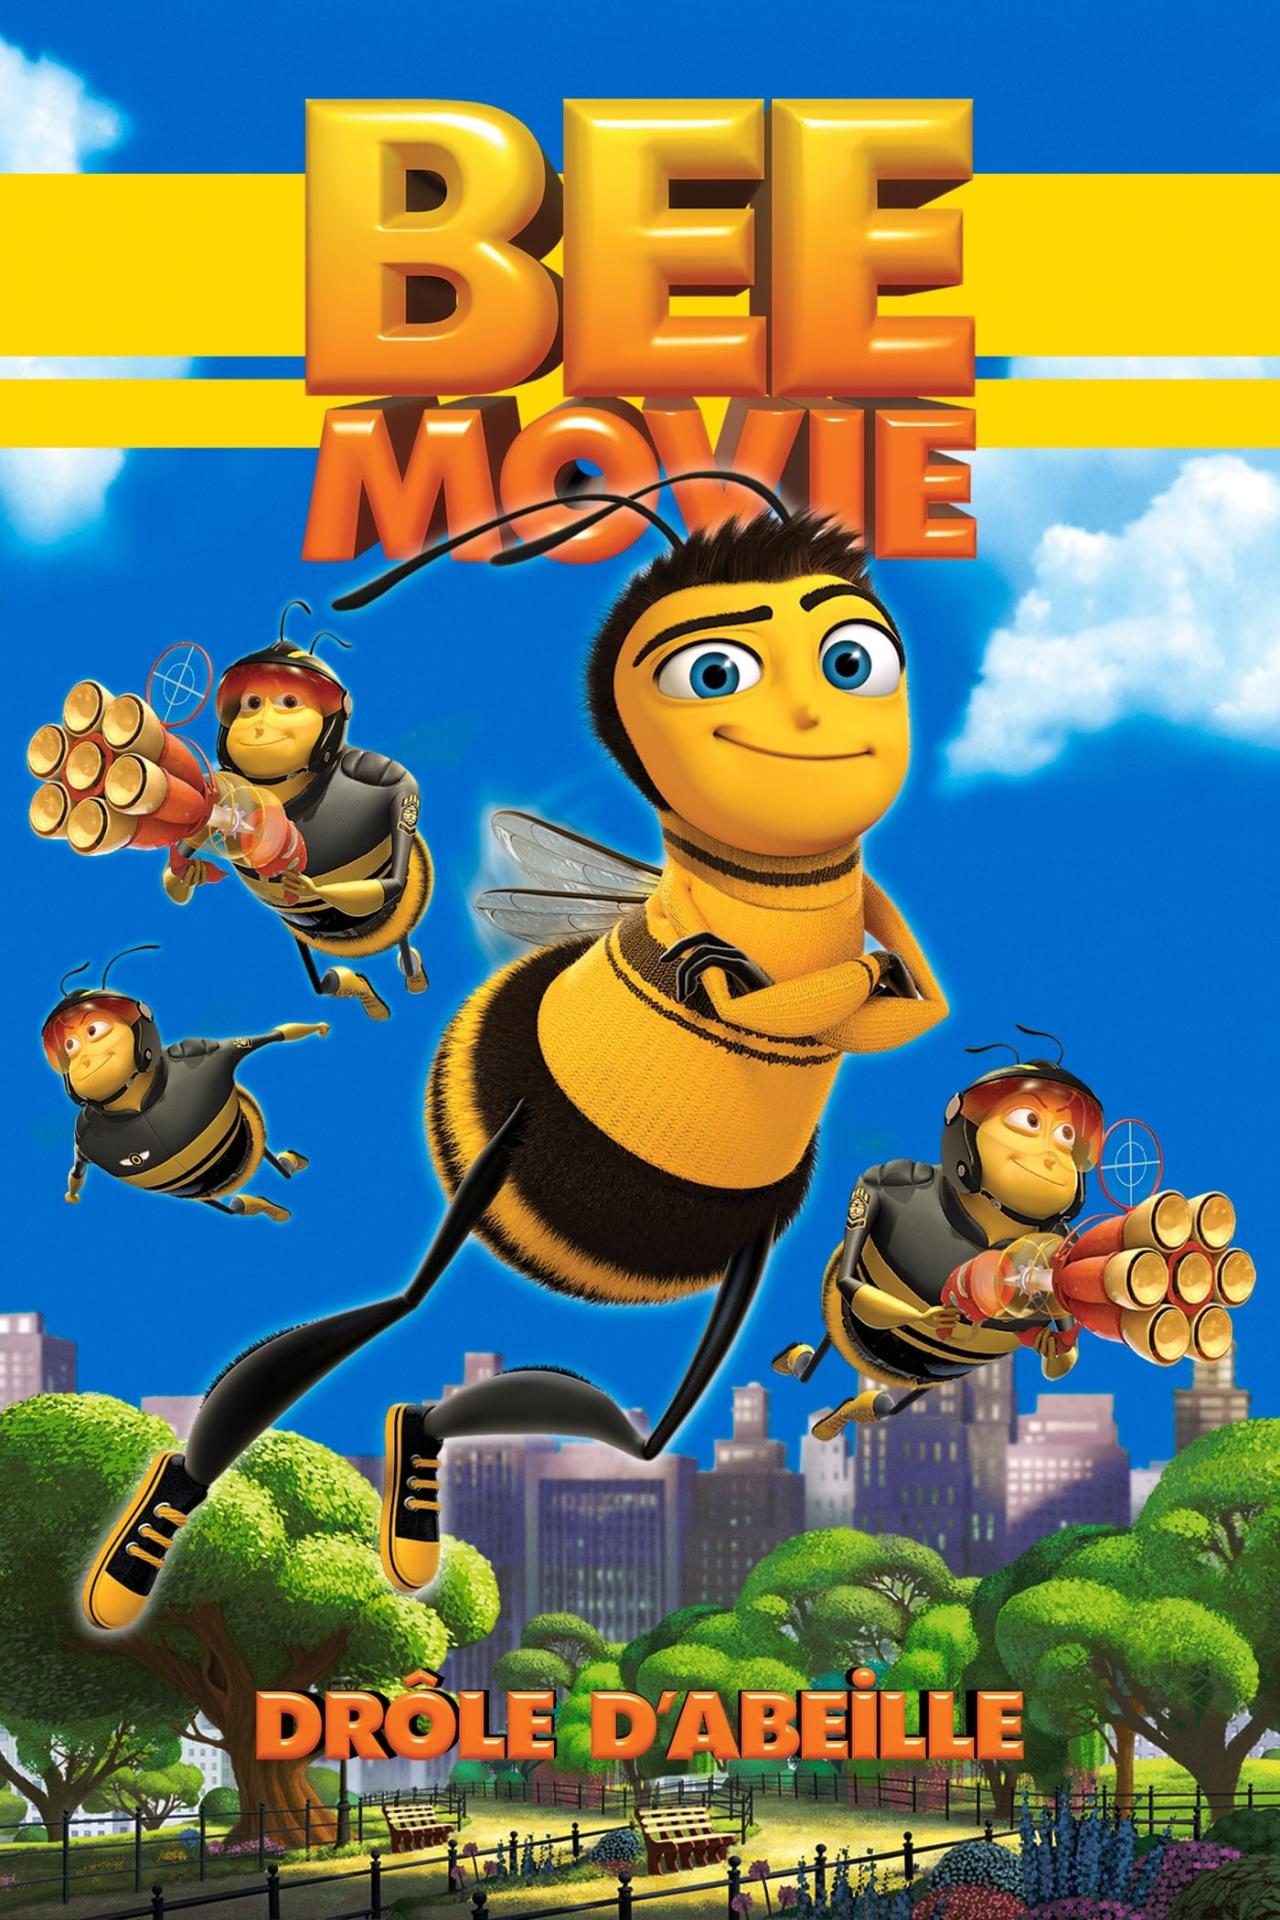 Bee Movie : Drôle d'abeille est-il disponible sur Netflix ou autre ?